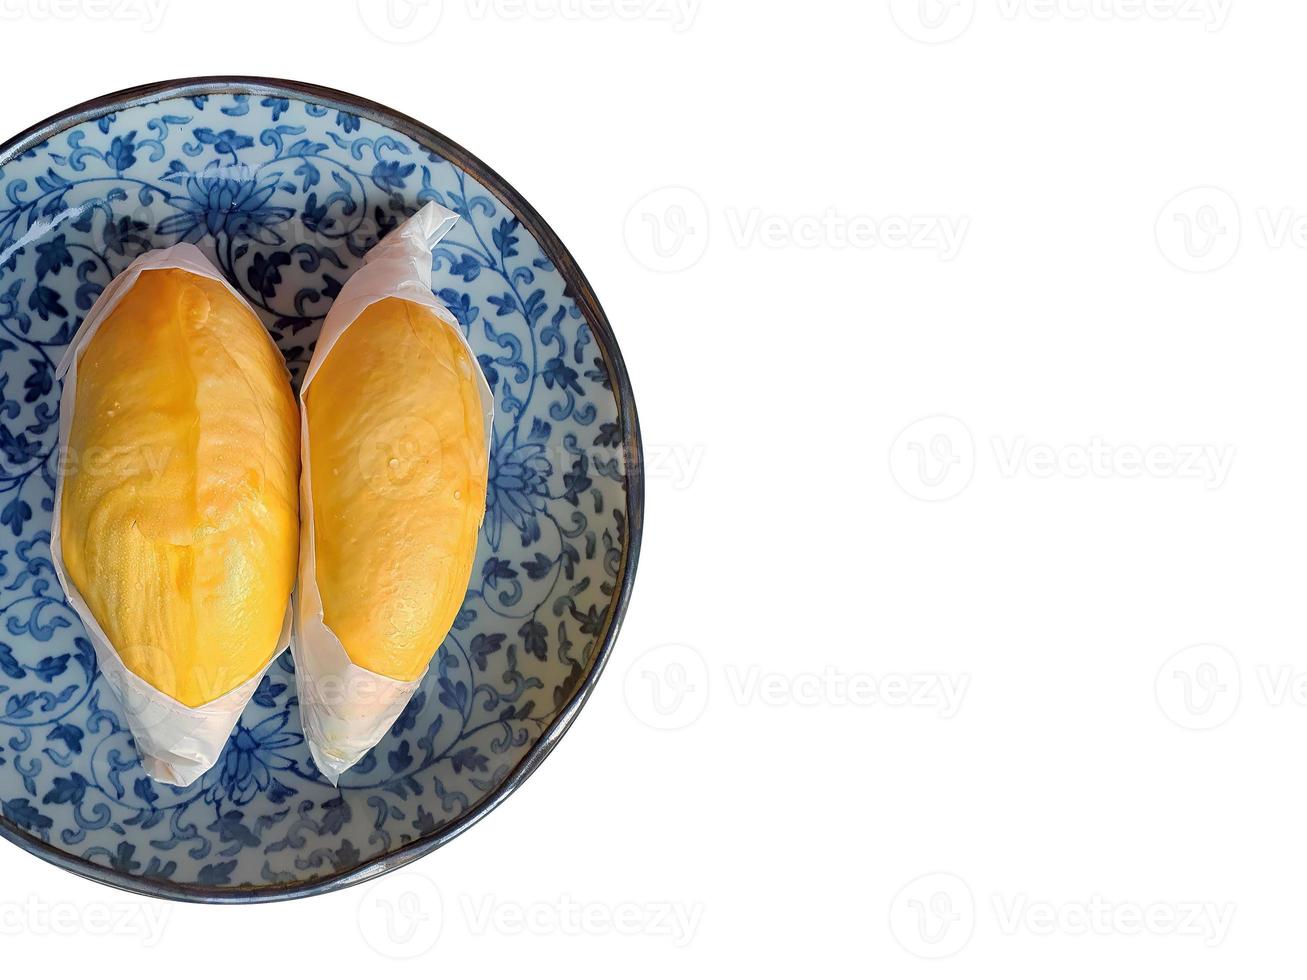 Zwei von goldgelber Farbe Durian-Fleisch, eingewickelt mit weißem Papier auf der blauen antiken Platte, König der Früchte, natürliche Form und Form, isoliert, weißer Hintergrund mit Beschneidungspfad foto